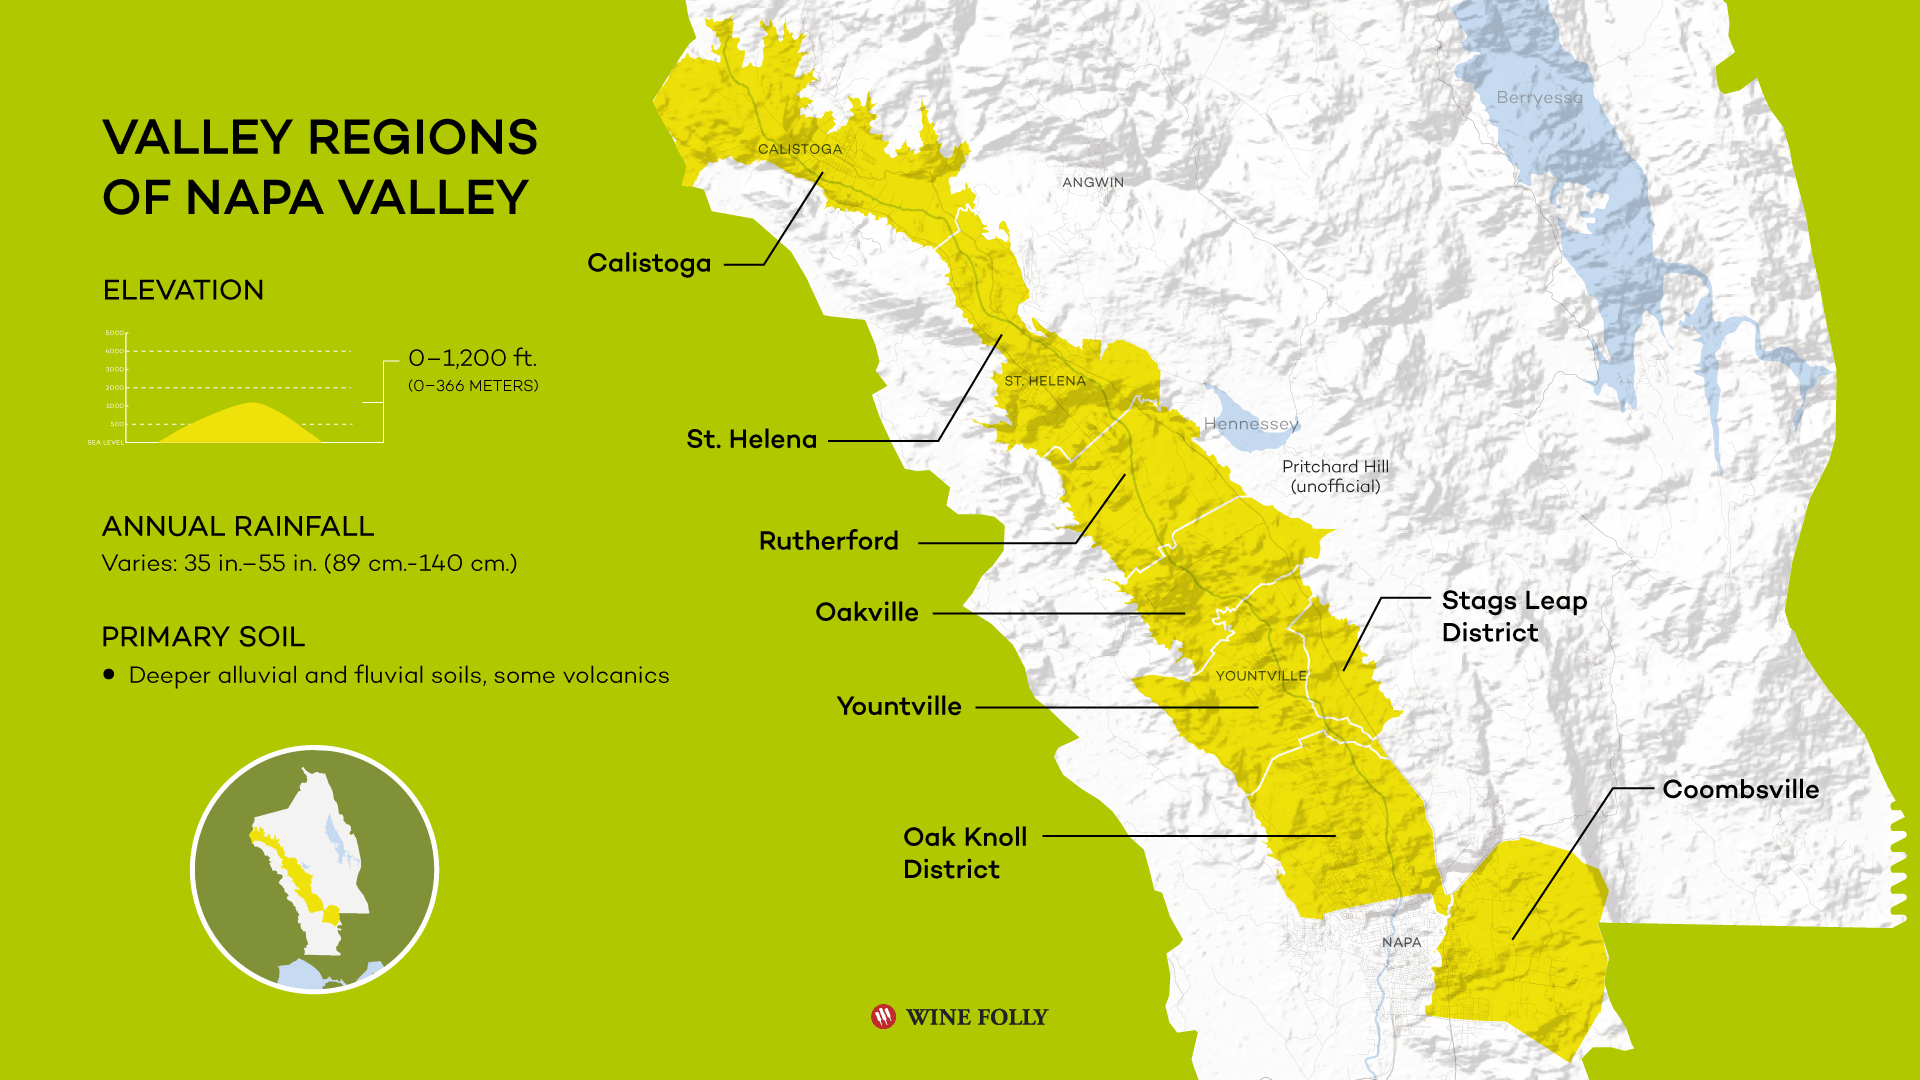 Valley Regions of Napa Valley